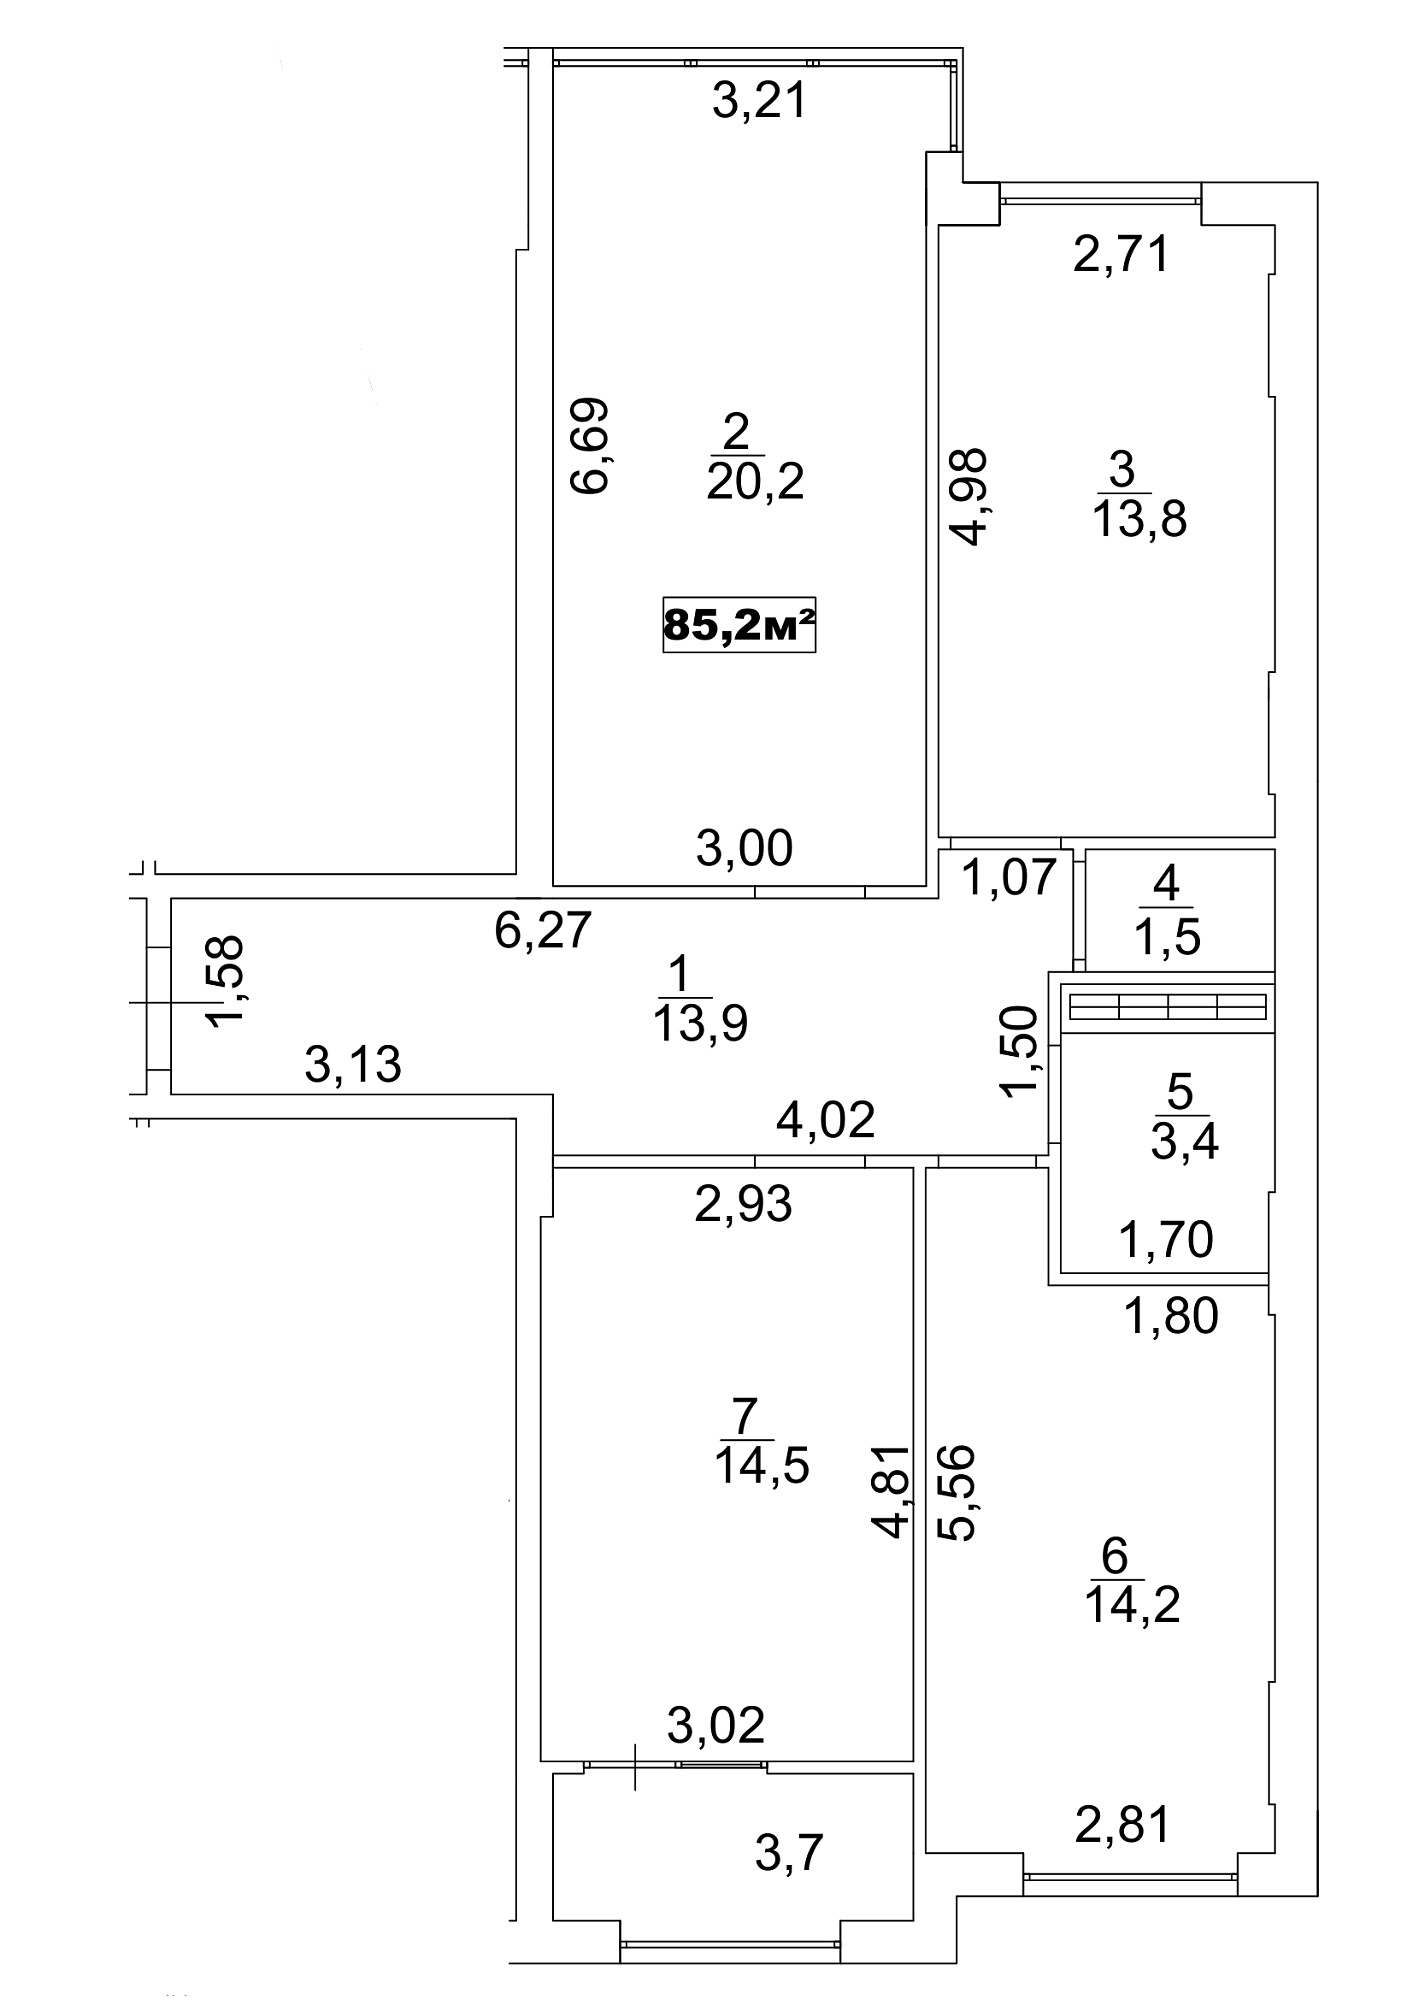 Планировка 3-к квартира площей 85.2м2, AB-13-04/00031.